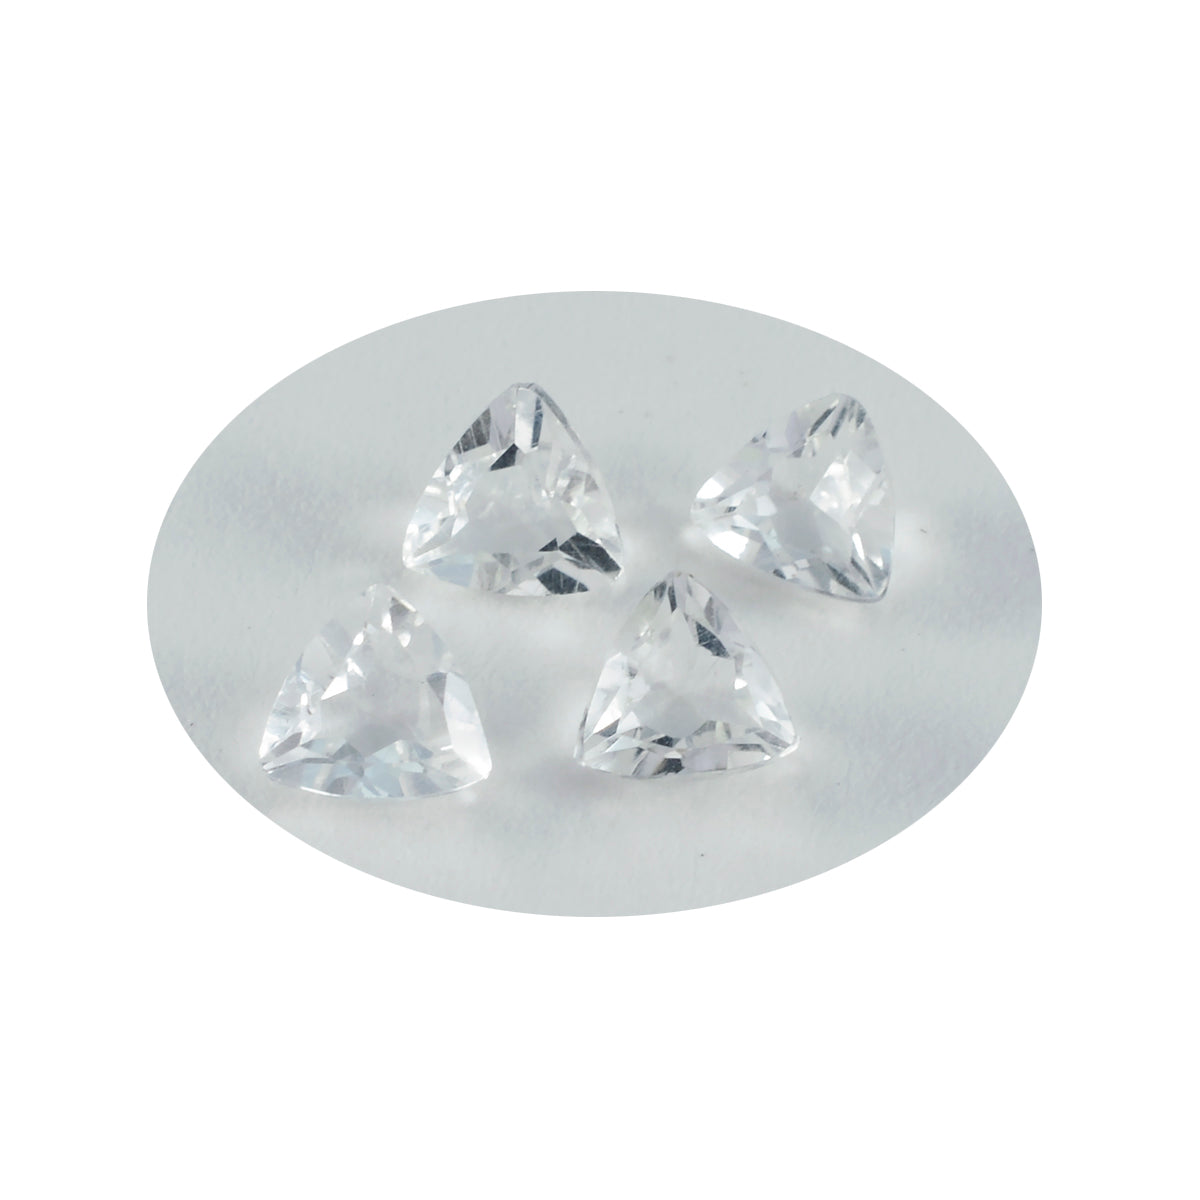 riyogems 1pc cristallo bianco quarzo sfaccettato 11x11 mm forma trilione pietra preziosa sciolta di qualità carina